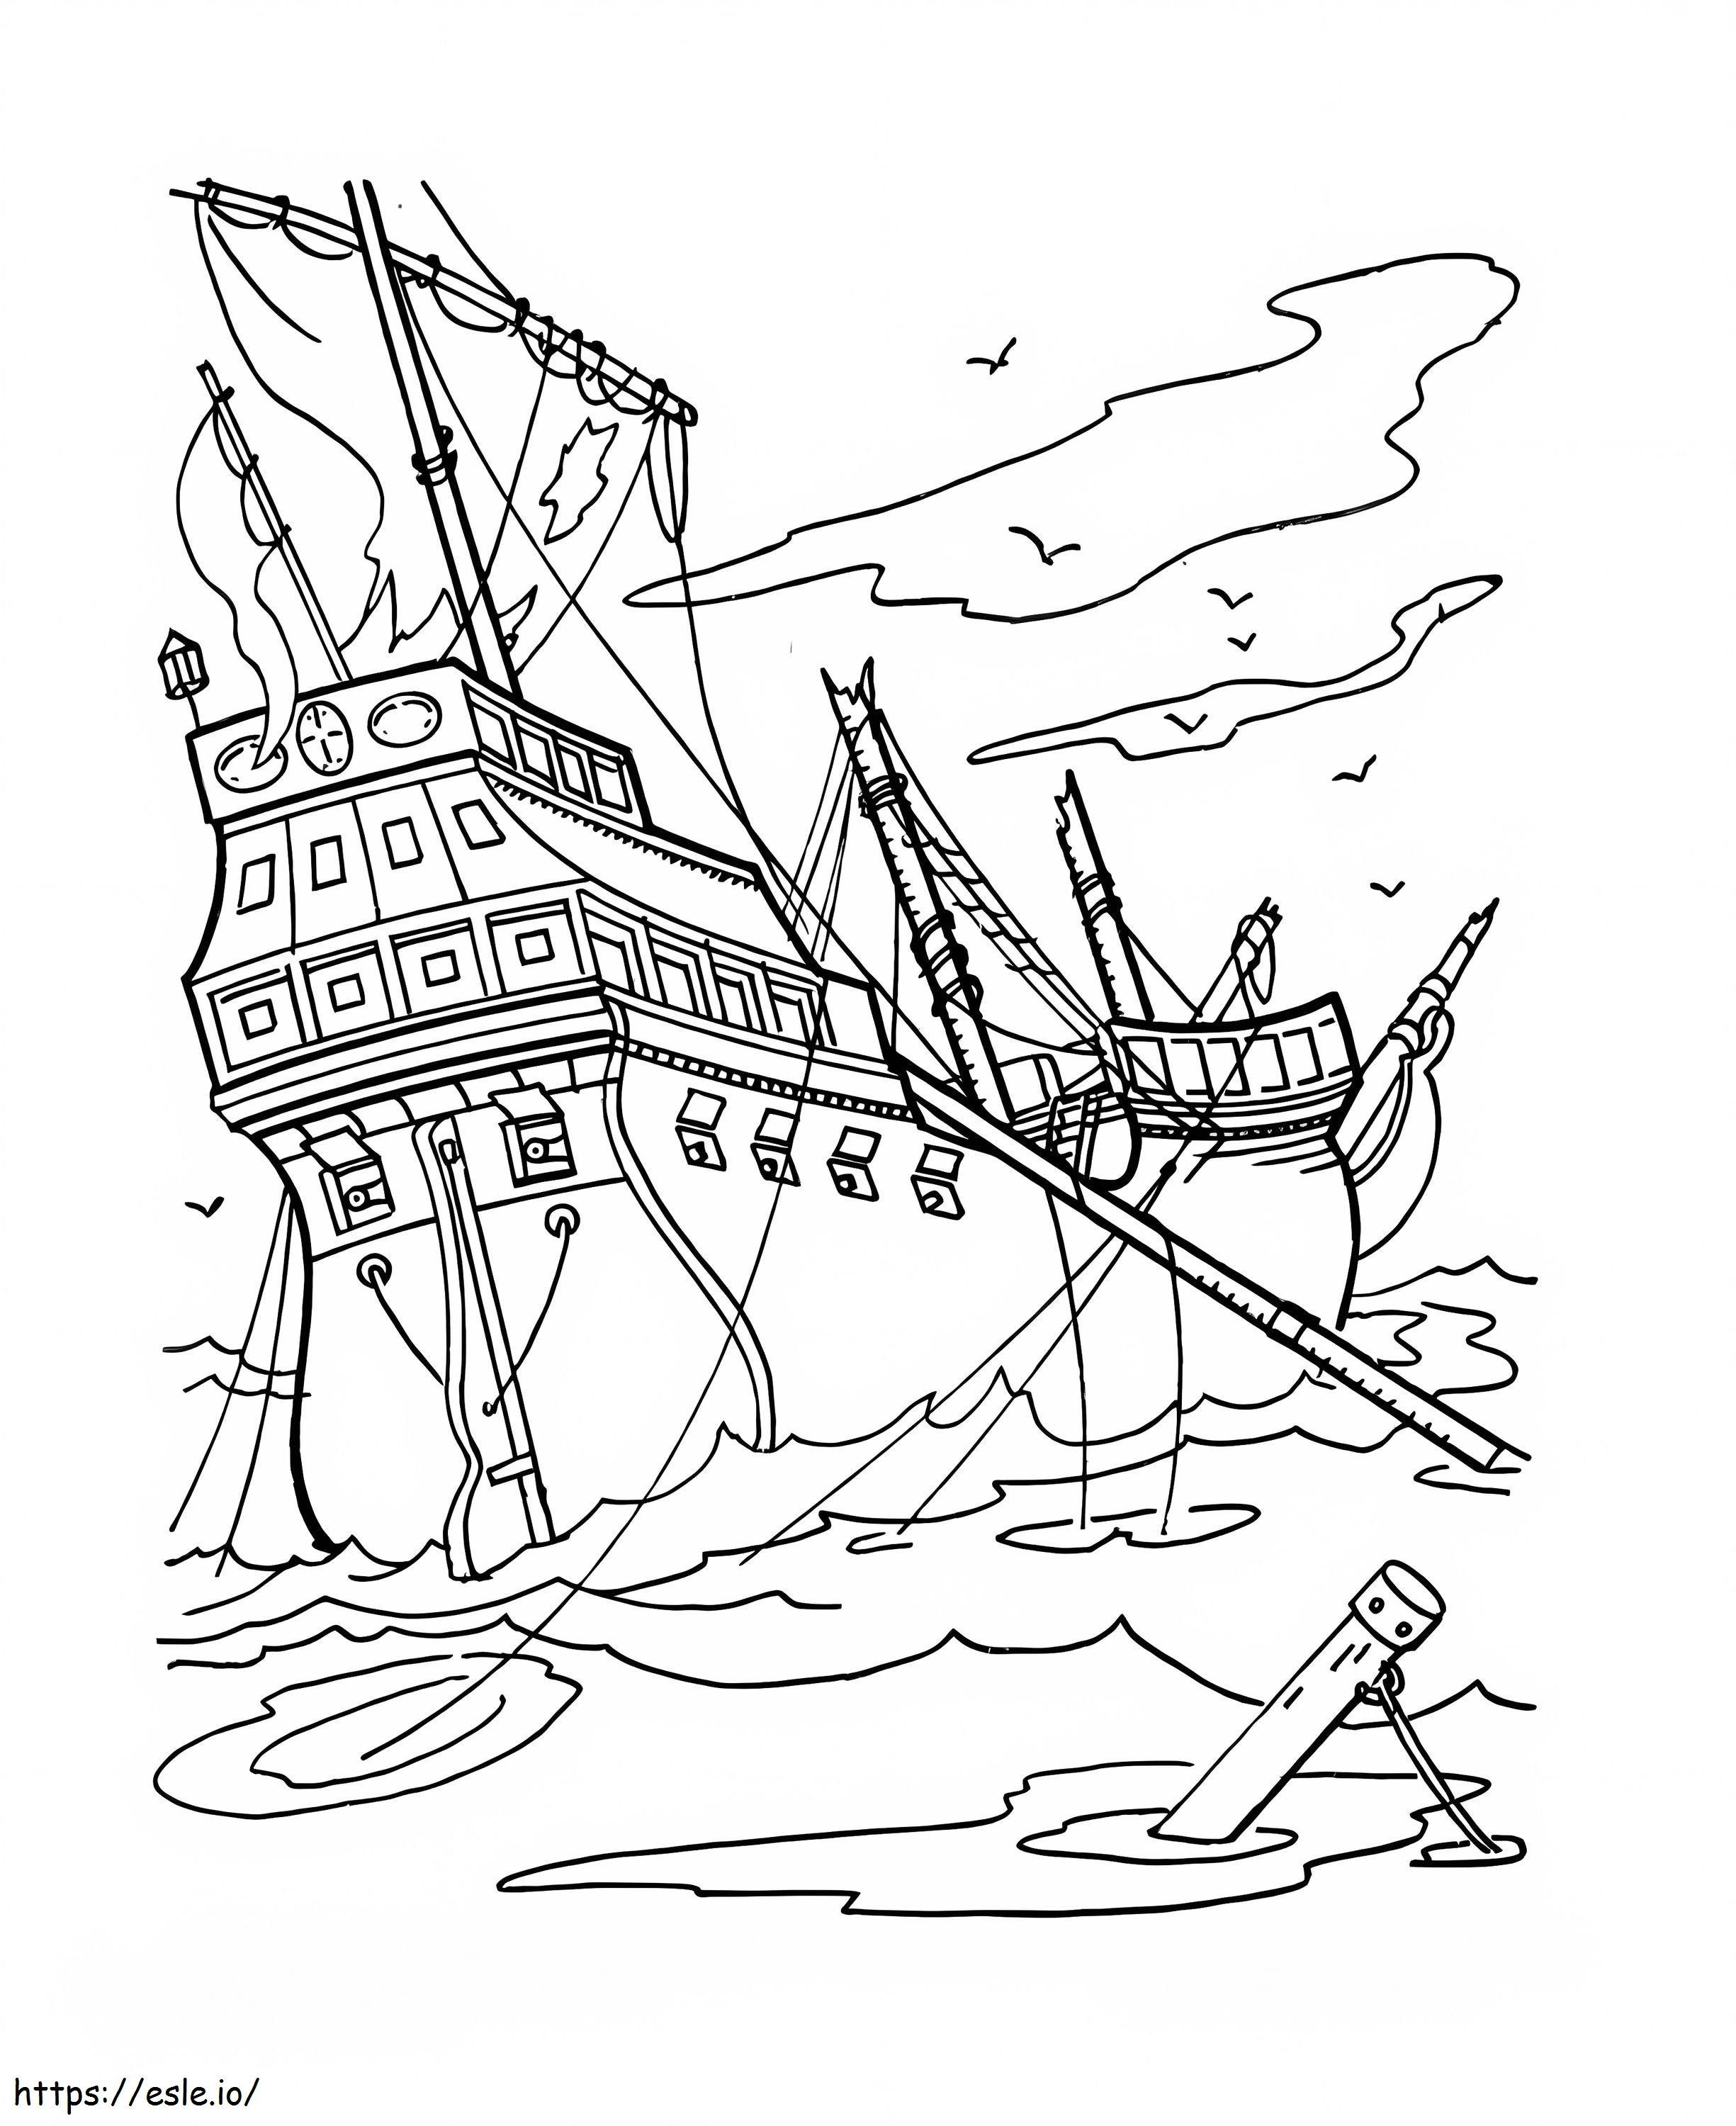 Nava piraților naufragiată de colorat